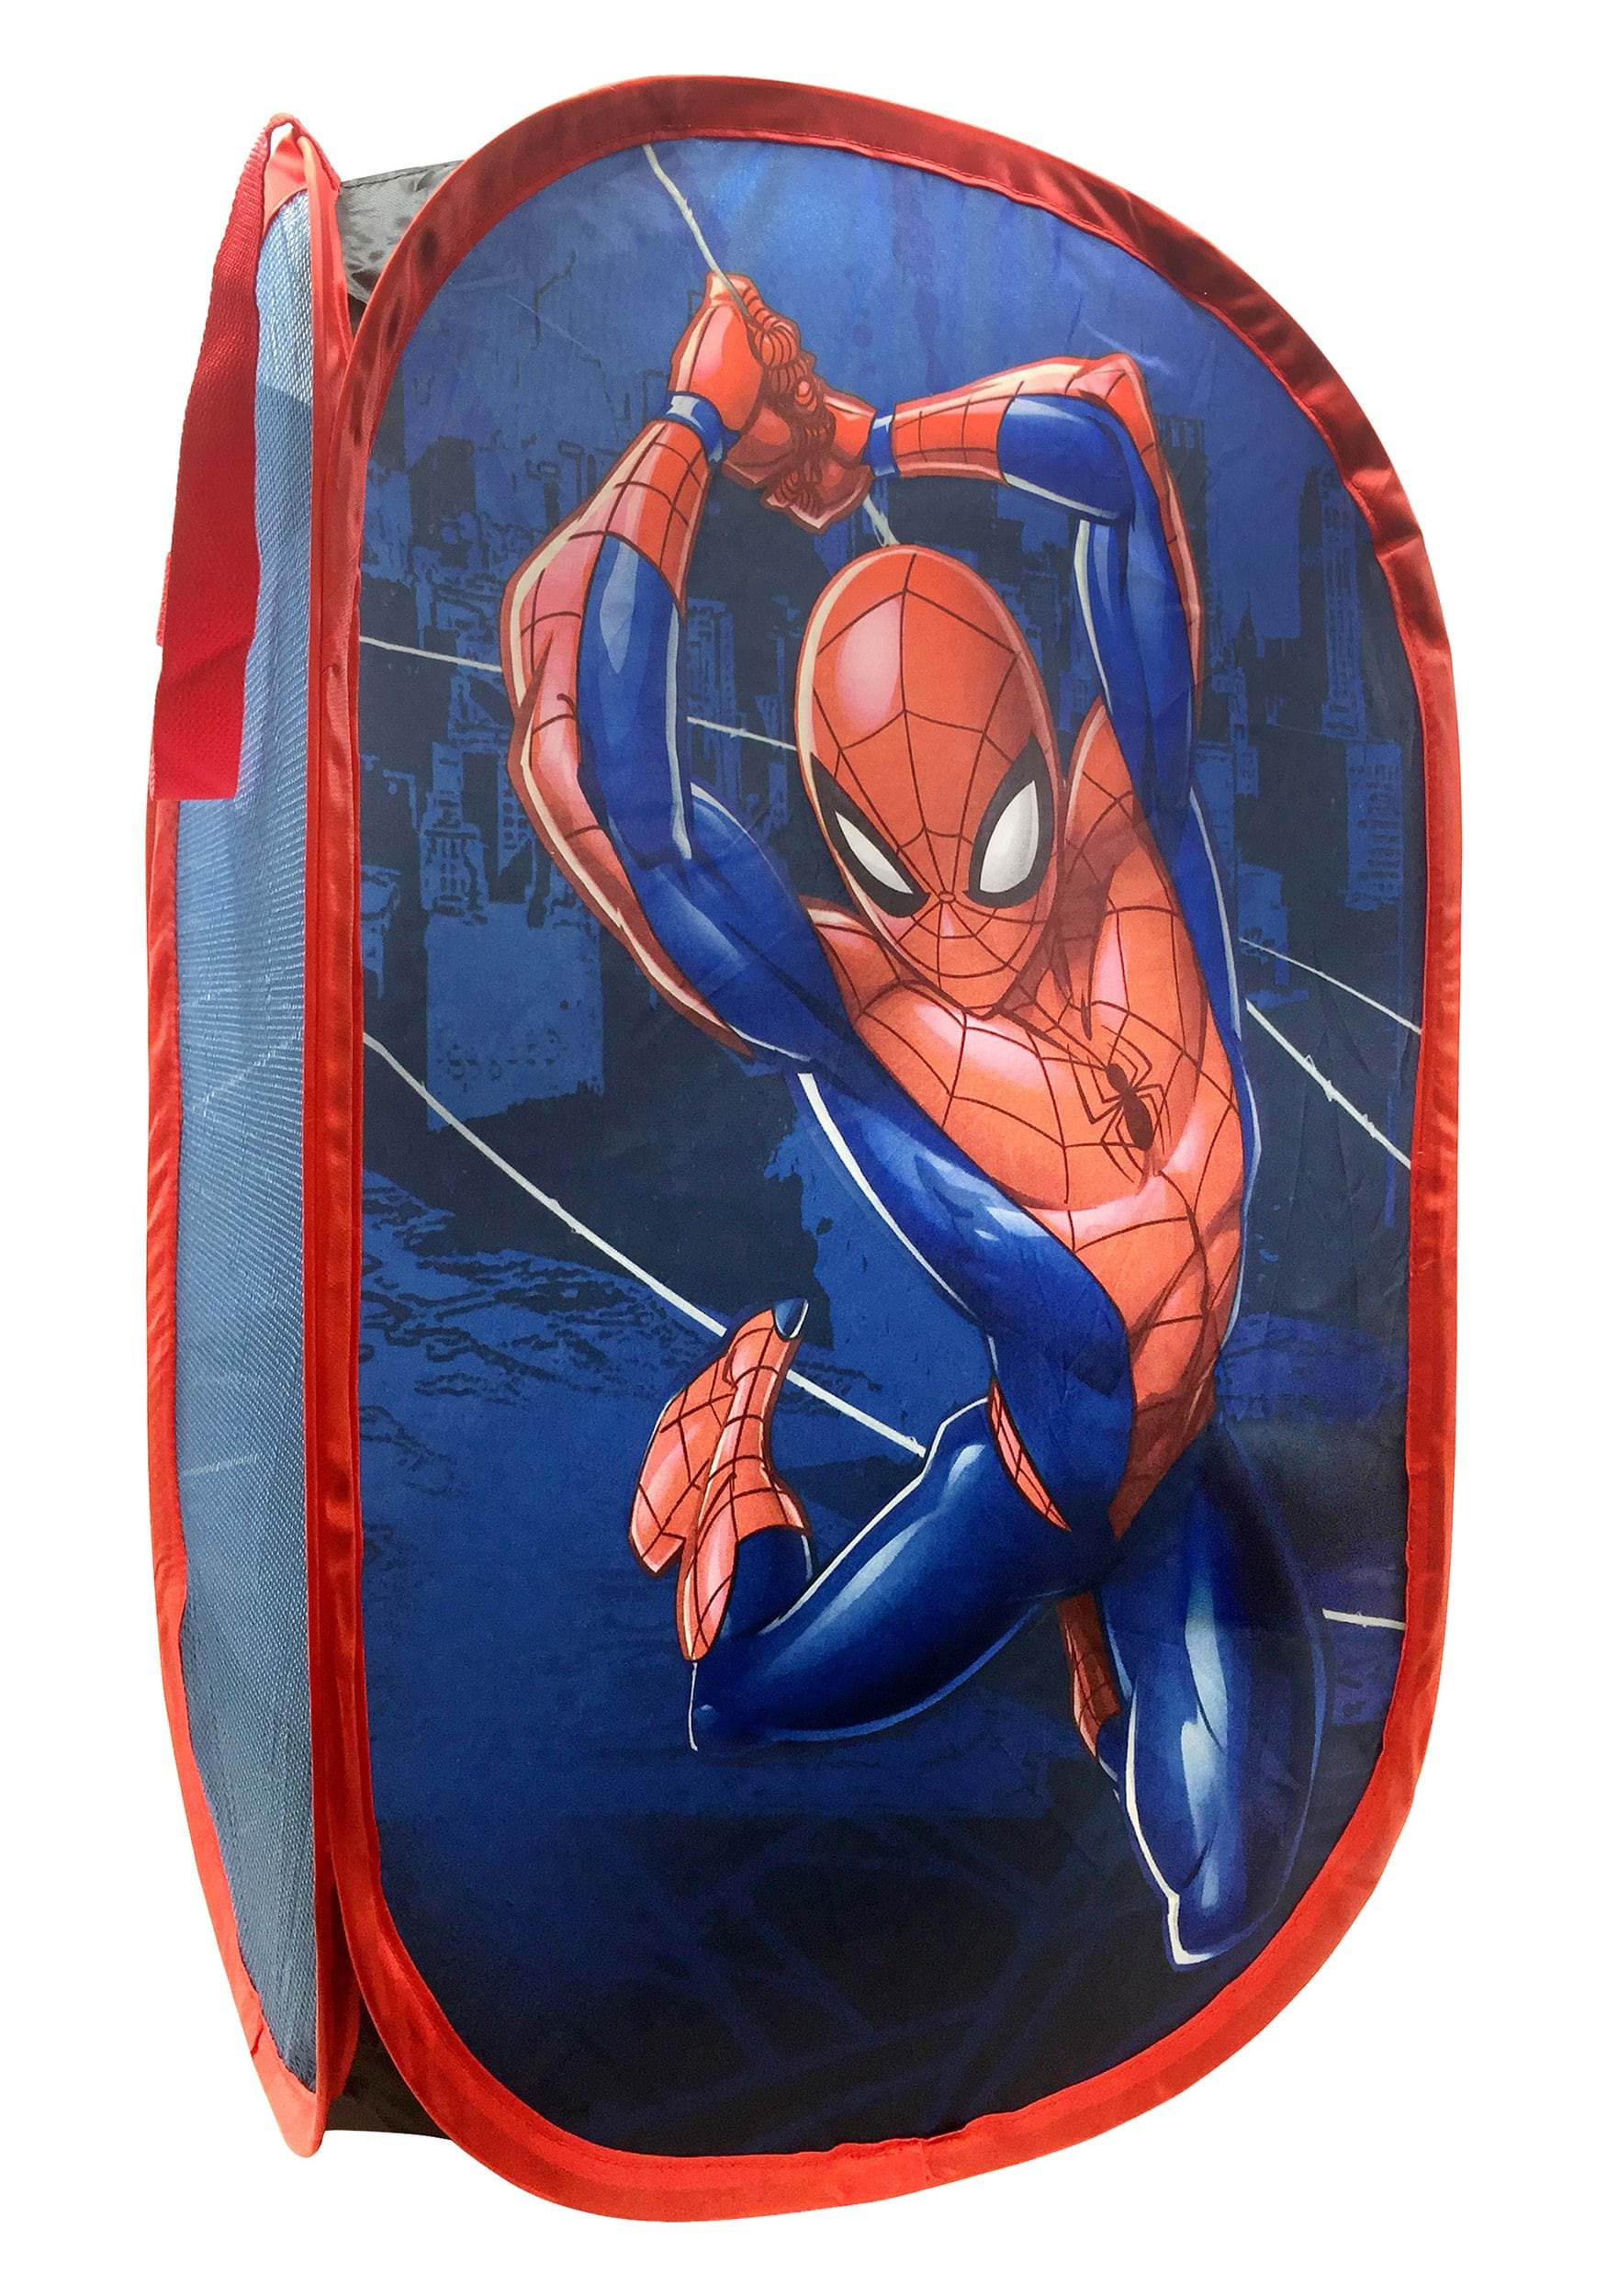 web-sling-spiderman-pop-up-hamper